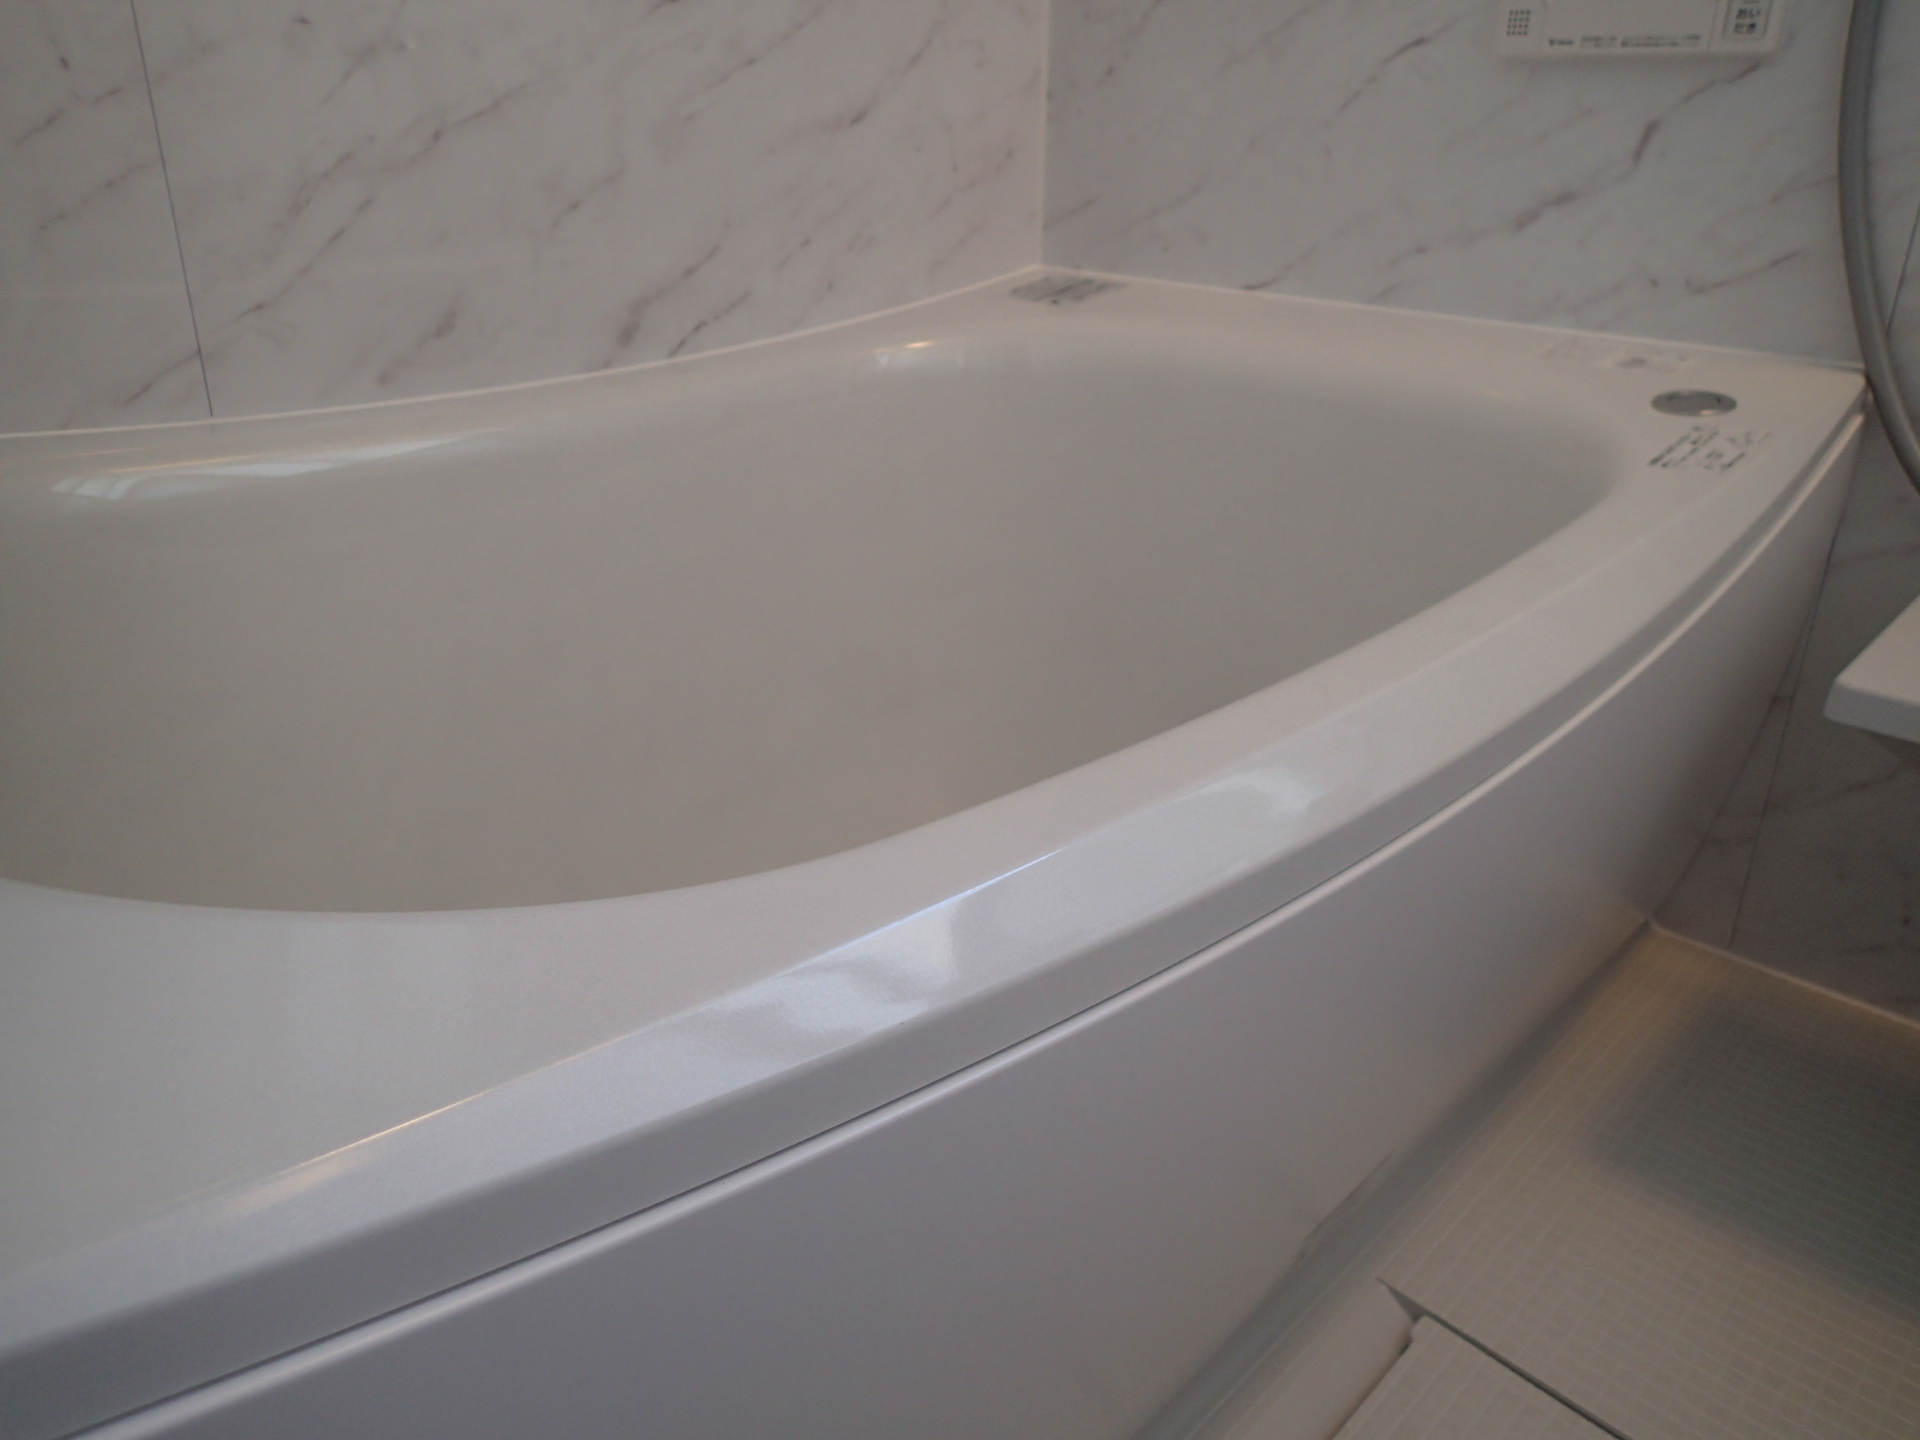 ゆりかごにつつまれるようなデザインの浴槽はお掃除らくらく人大浴槽仕様。もちろん魔法瓶浴槽です。